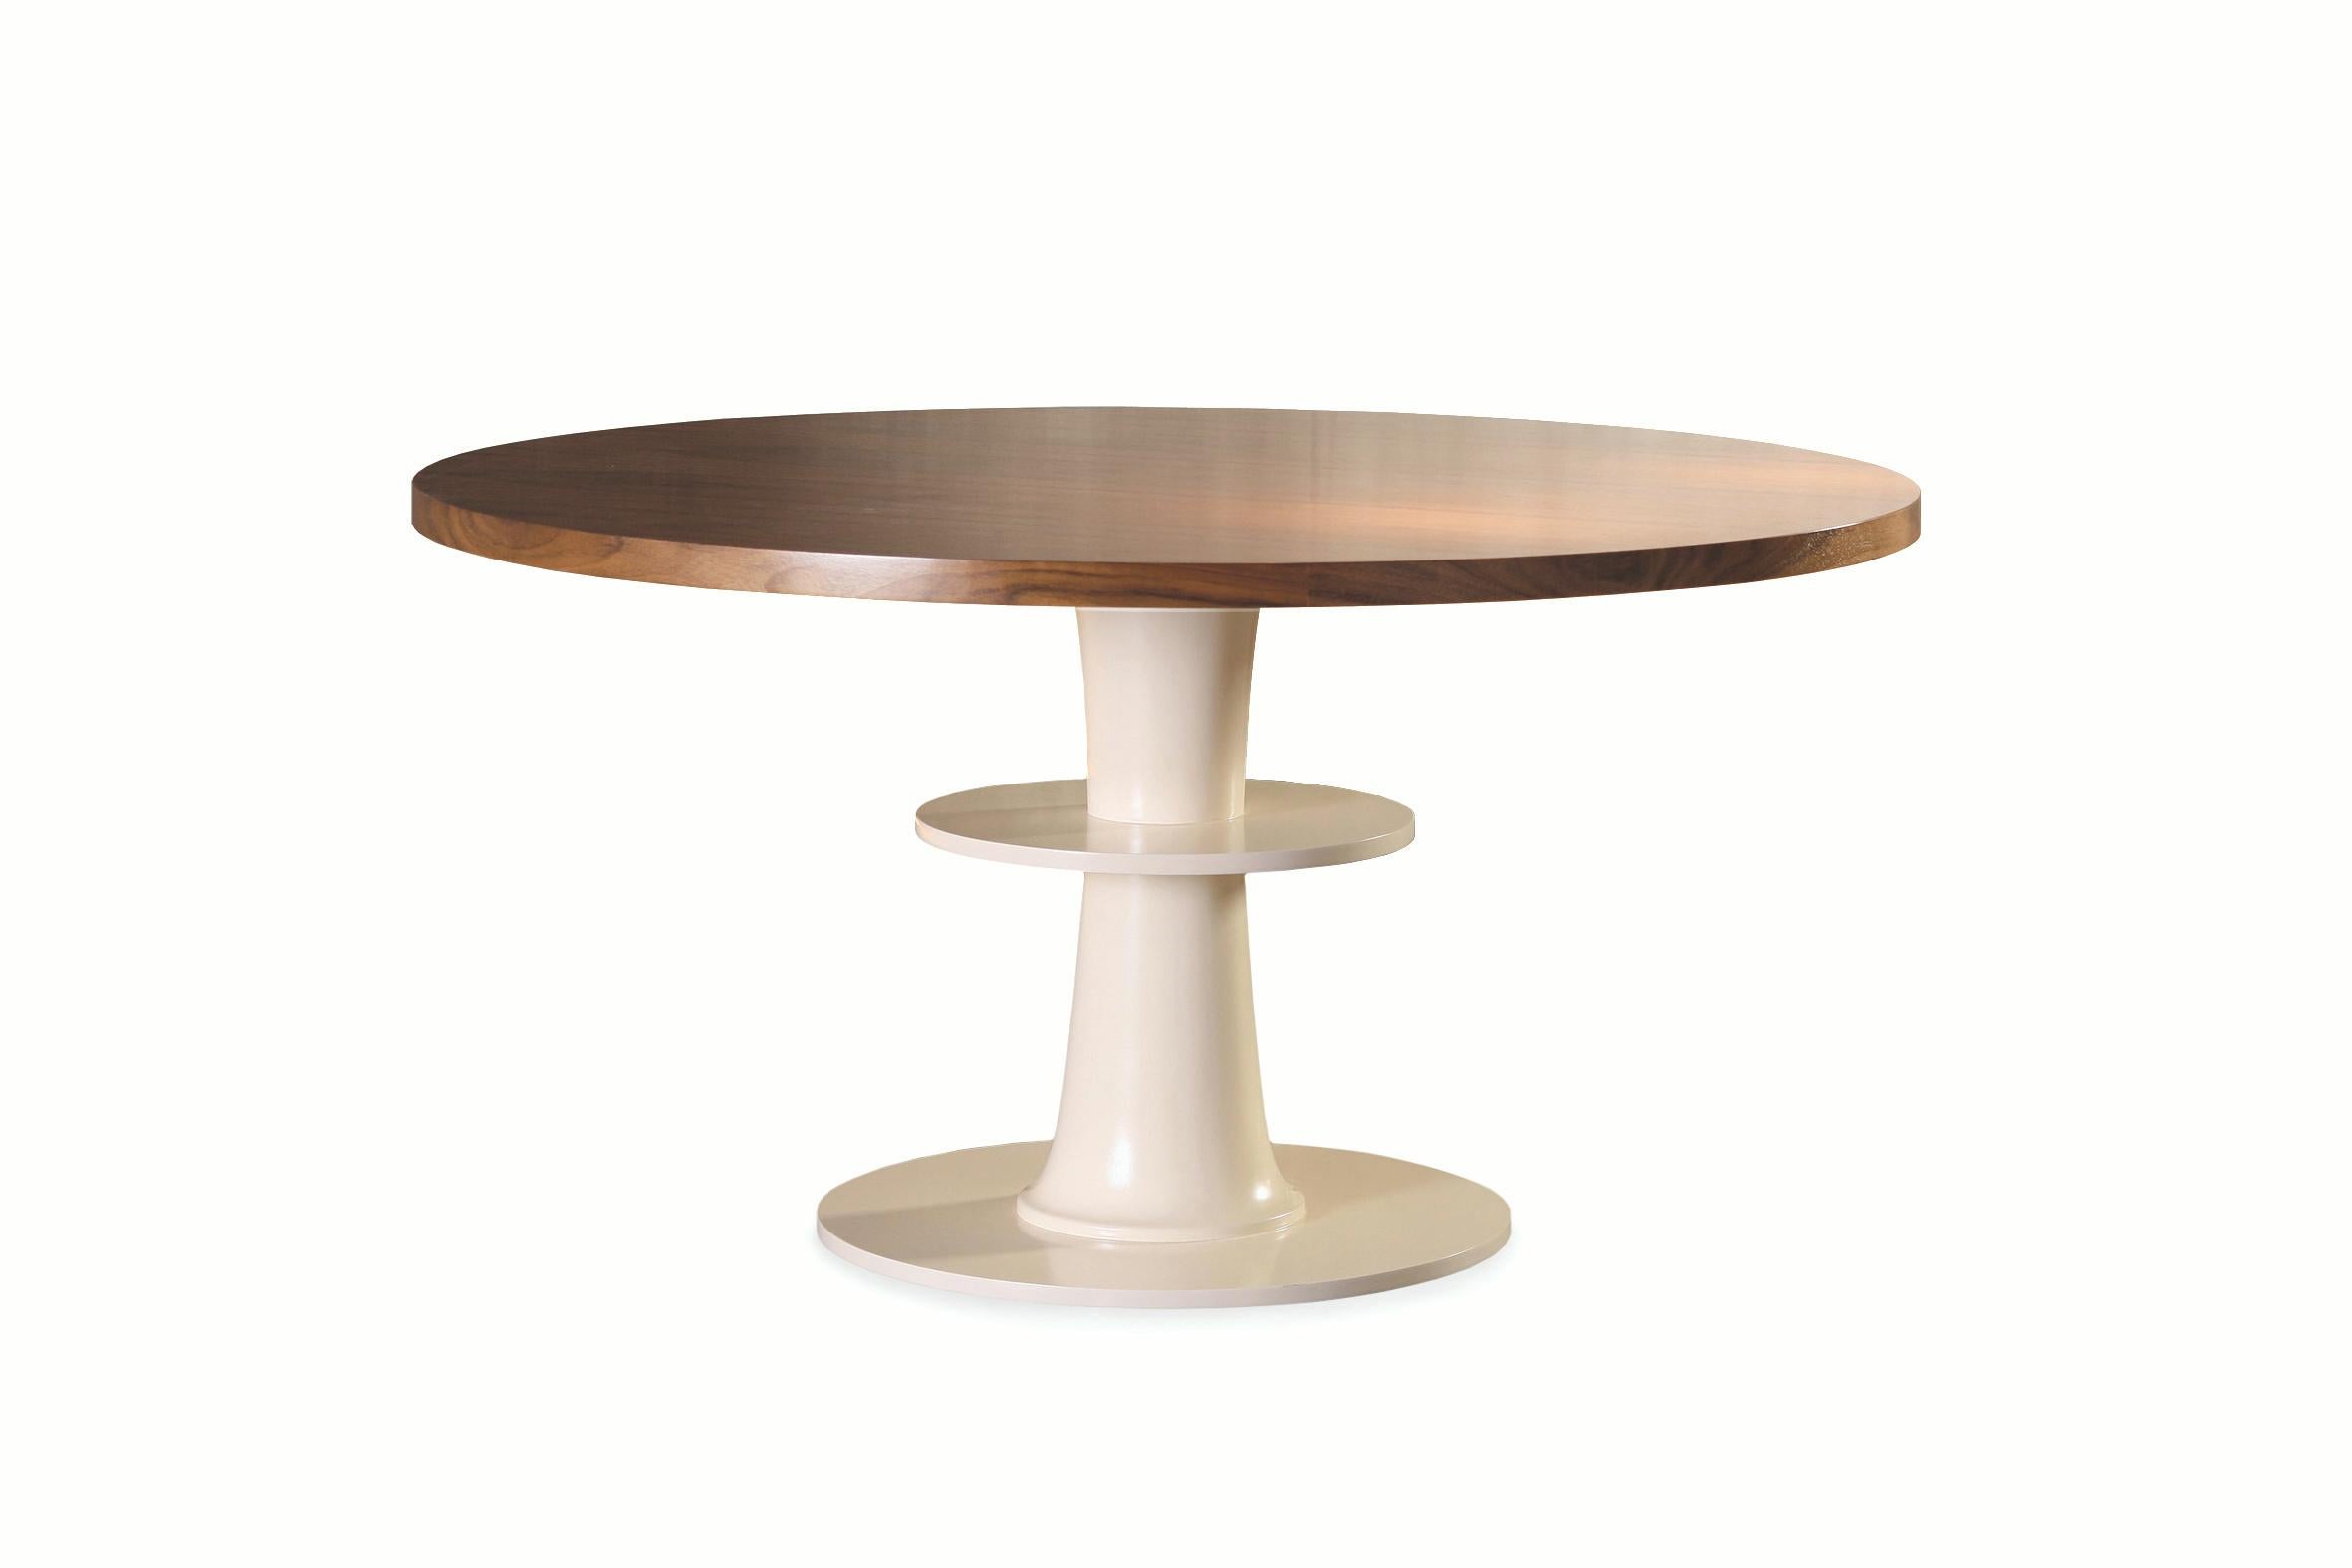 Circule ist ein praktischer und lustiger runder Tisch aus Sperrholz, Decape oder lackierter MDF-Platte und einem lackierten MDF-Boden, der in vielen Farben angepasst werden kann. Die Mittelstütze ermöglicht es dem Benutzer, eine Handtasche oder